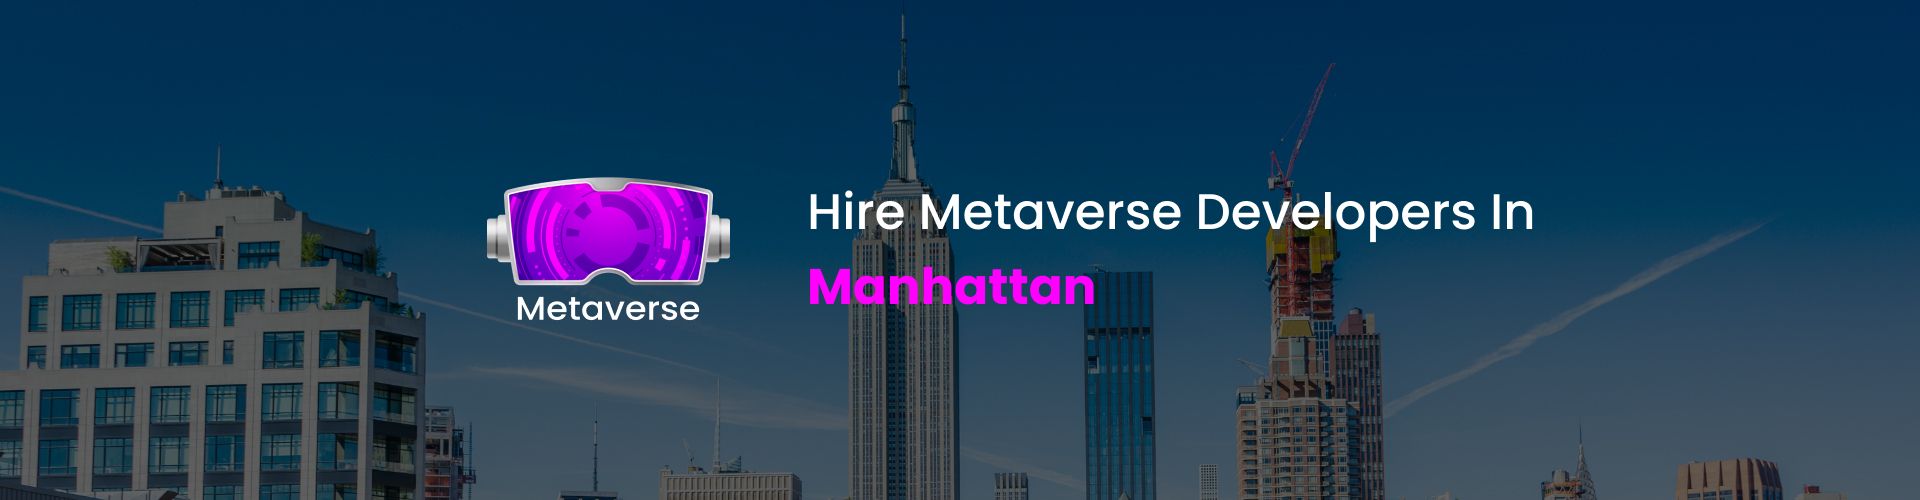 hire metaverse developers in manhattan